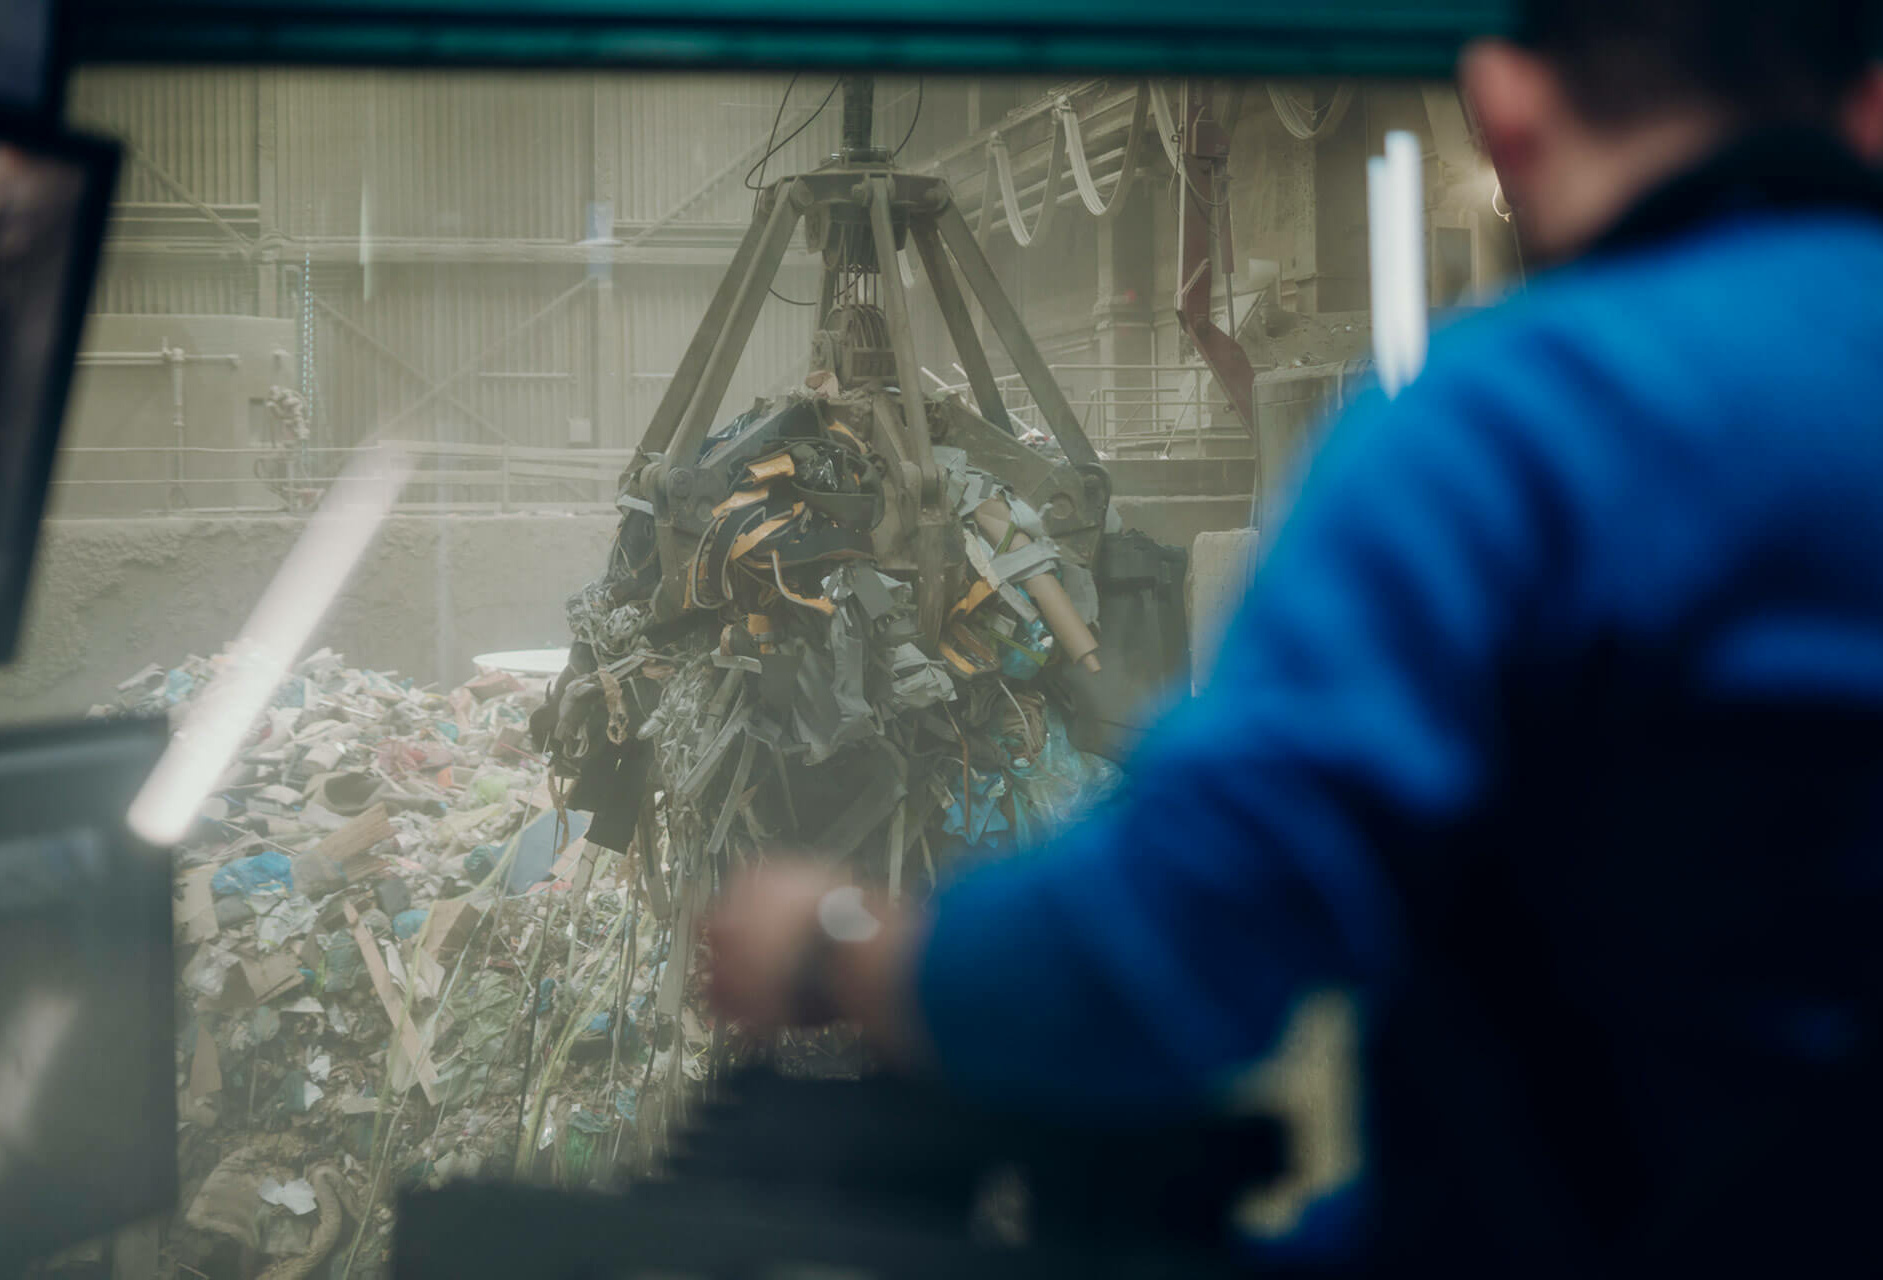 Mitarbeiter im ZAK Müllheizkraftwerk Kempten bewegt den Kran